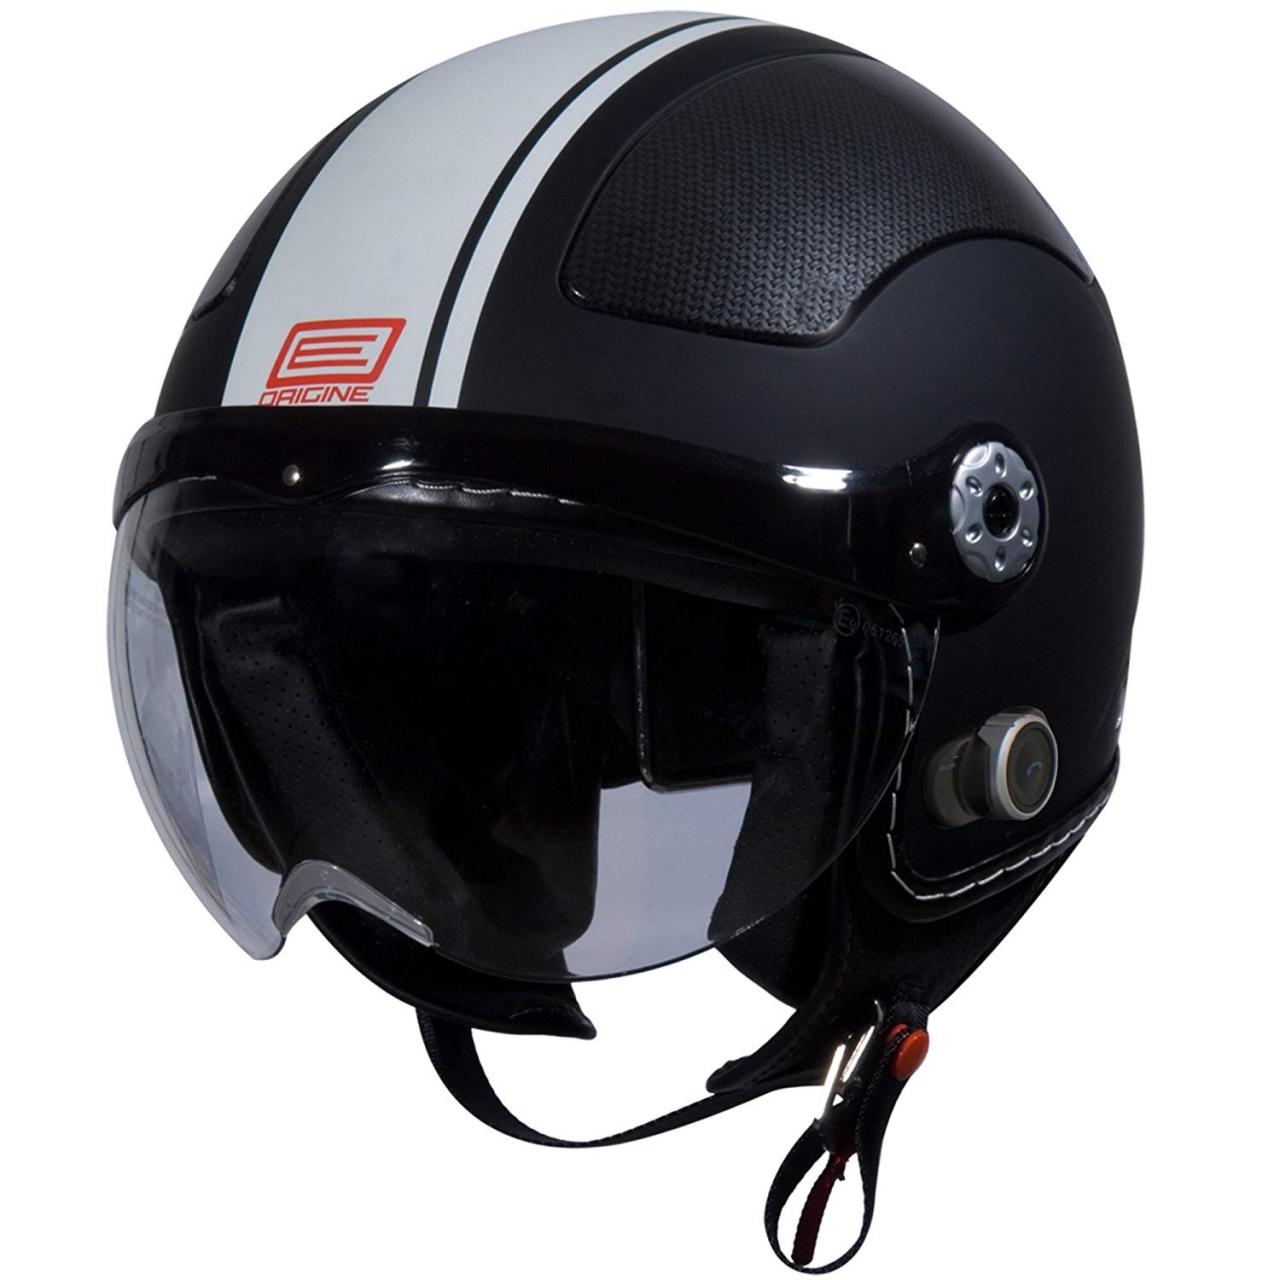 Origine Pilota 3/4 Helmet with Blinc Bluetooth – A Detailed Review